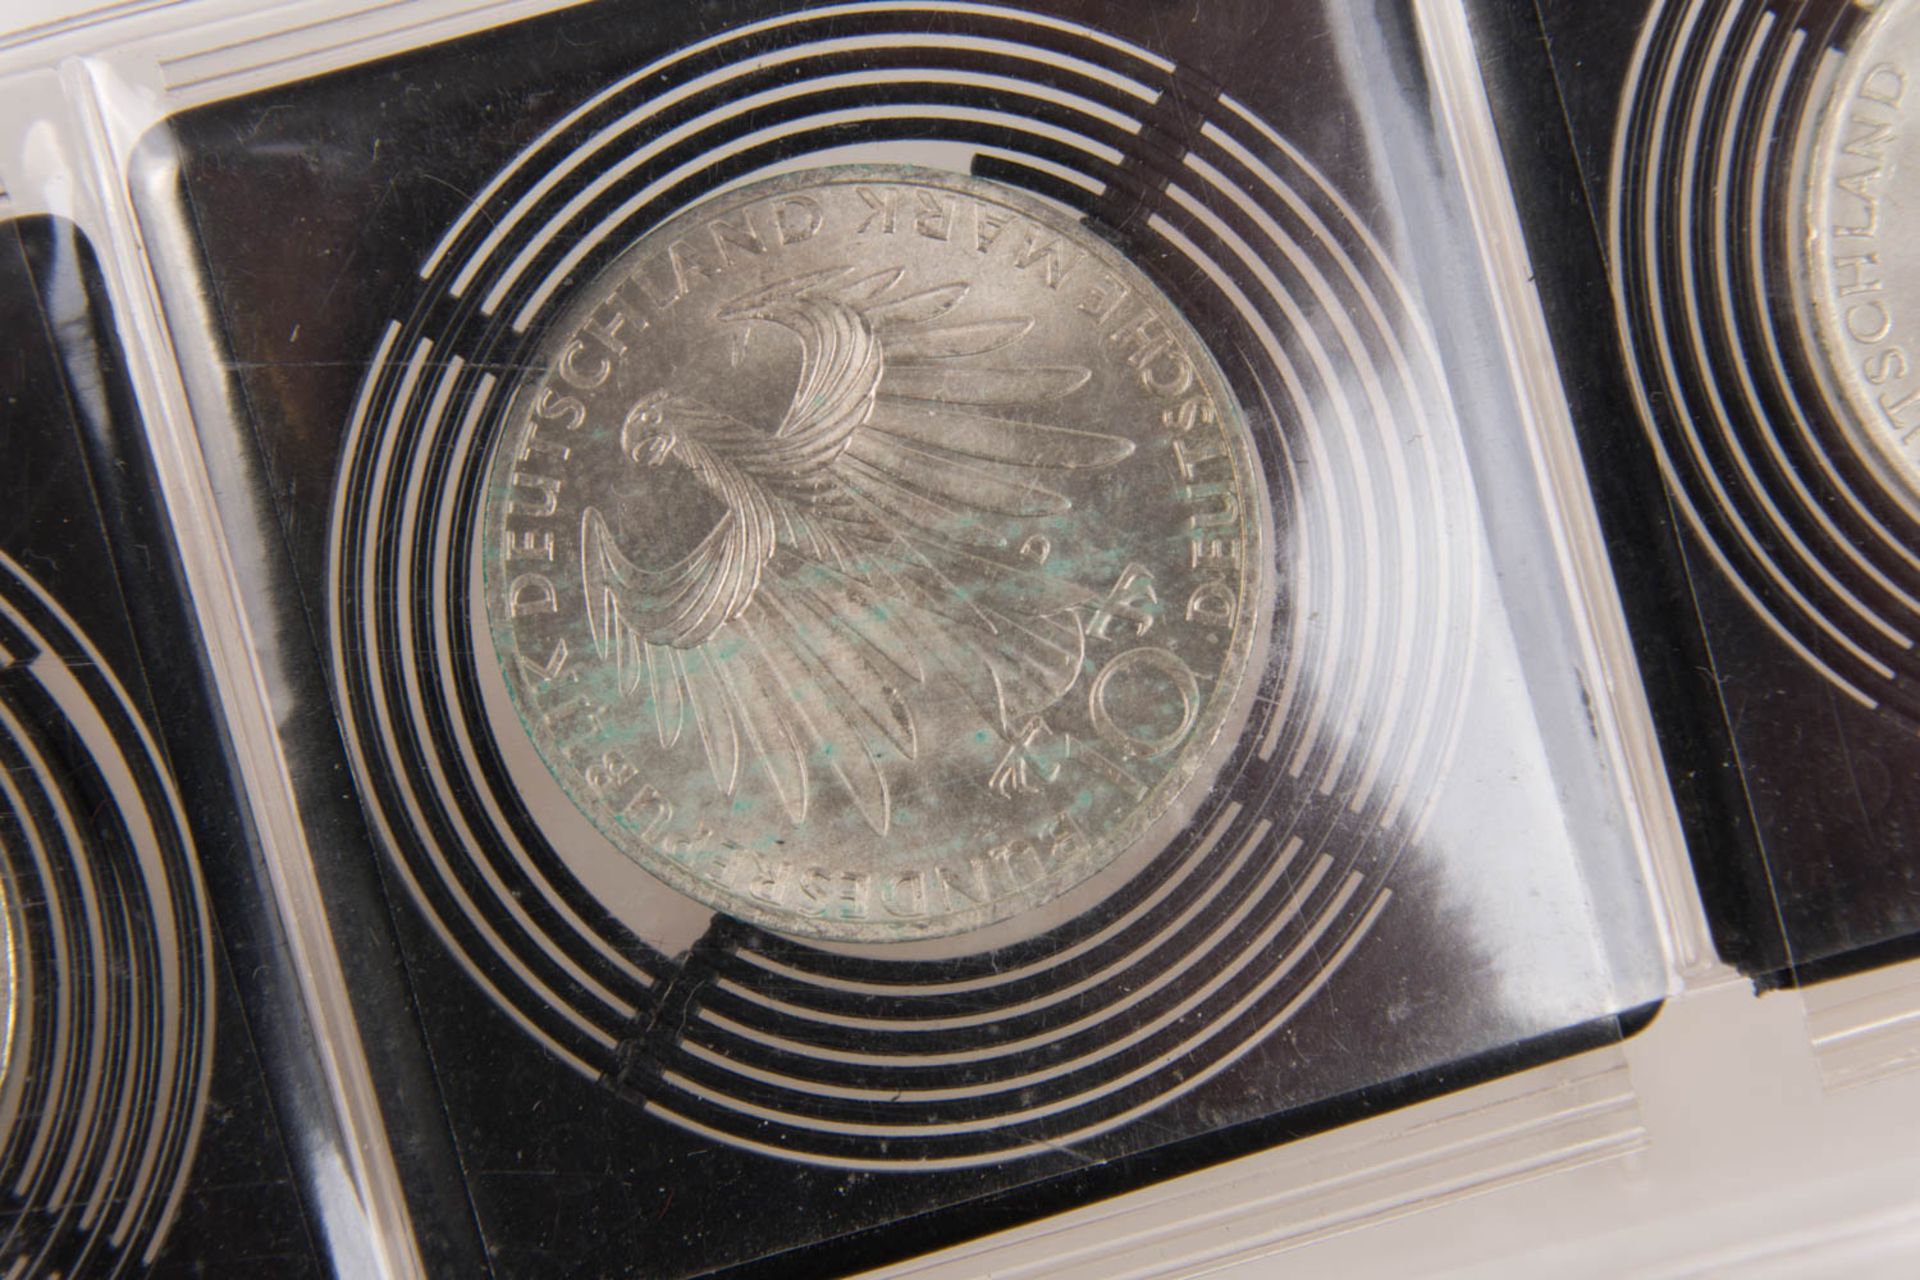 BRD, Drei 10-DM-Silbergedenkmünzen, Olympiade 1972. - Bild 5 aus 7